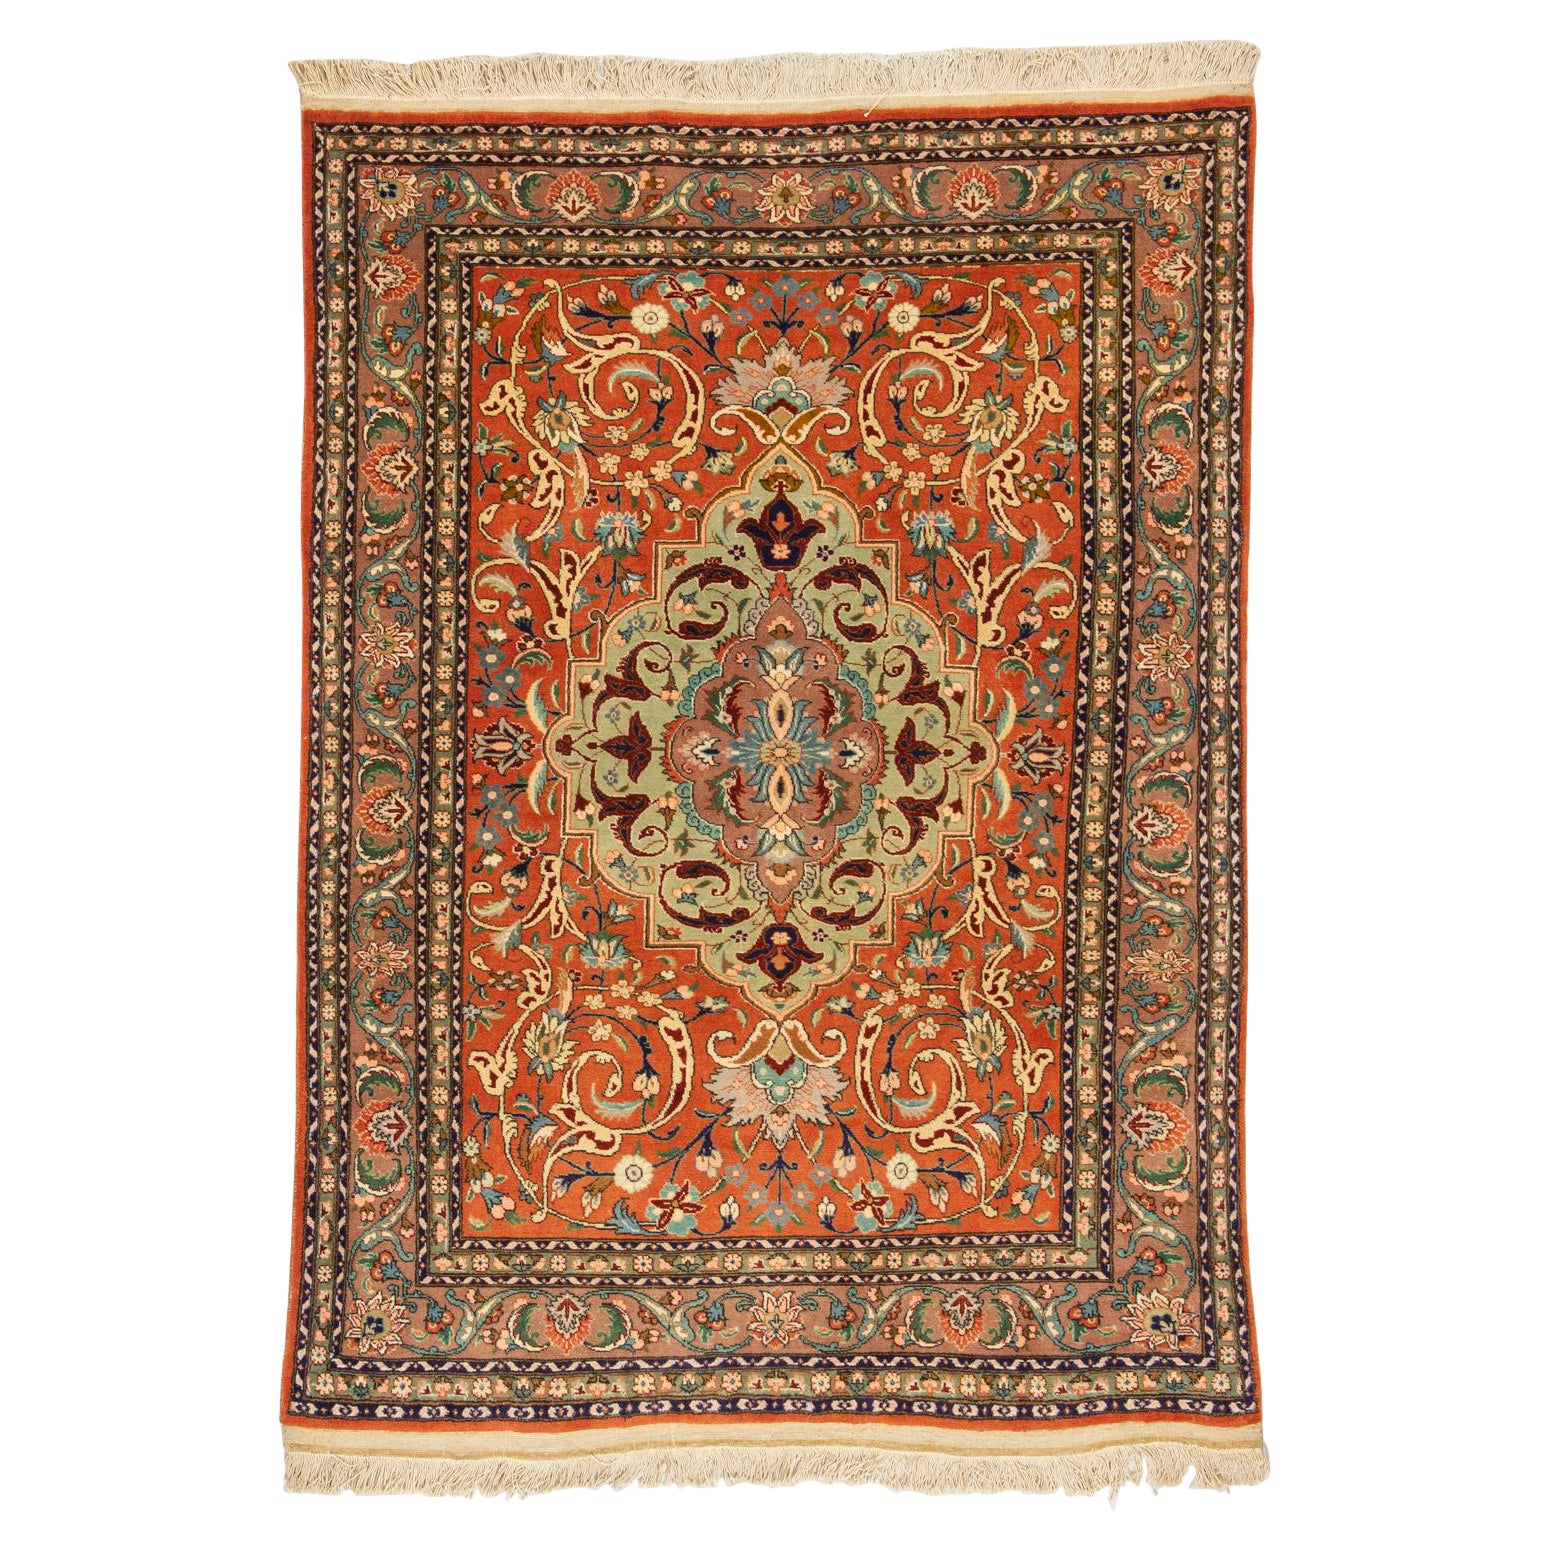 Unique Specimen of a Vintage Oriental Carpet For Sale